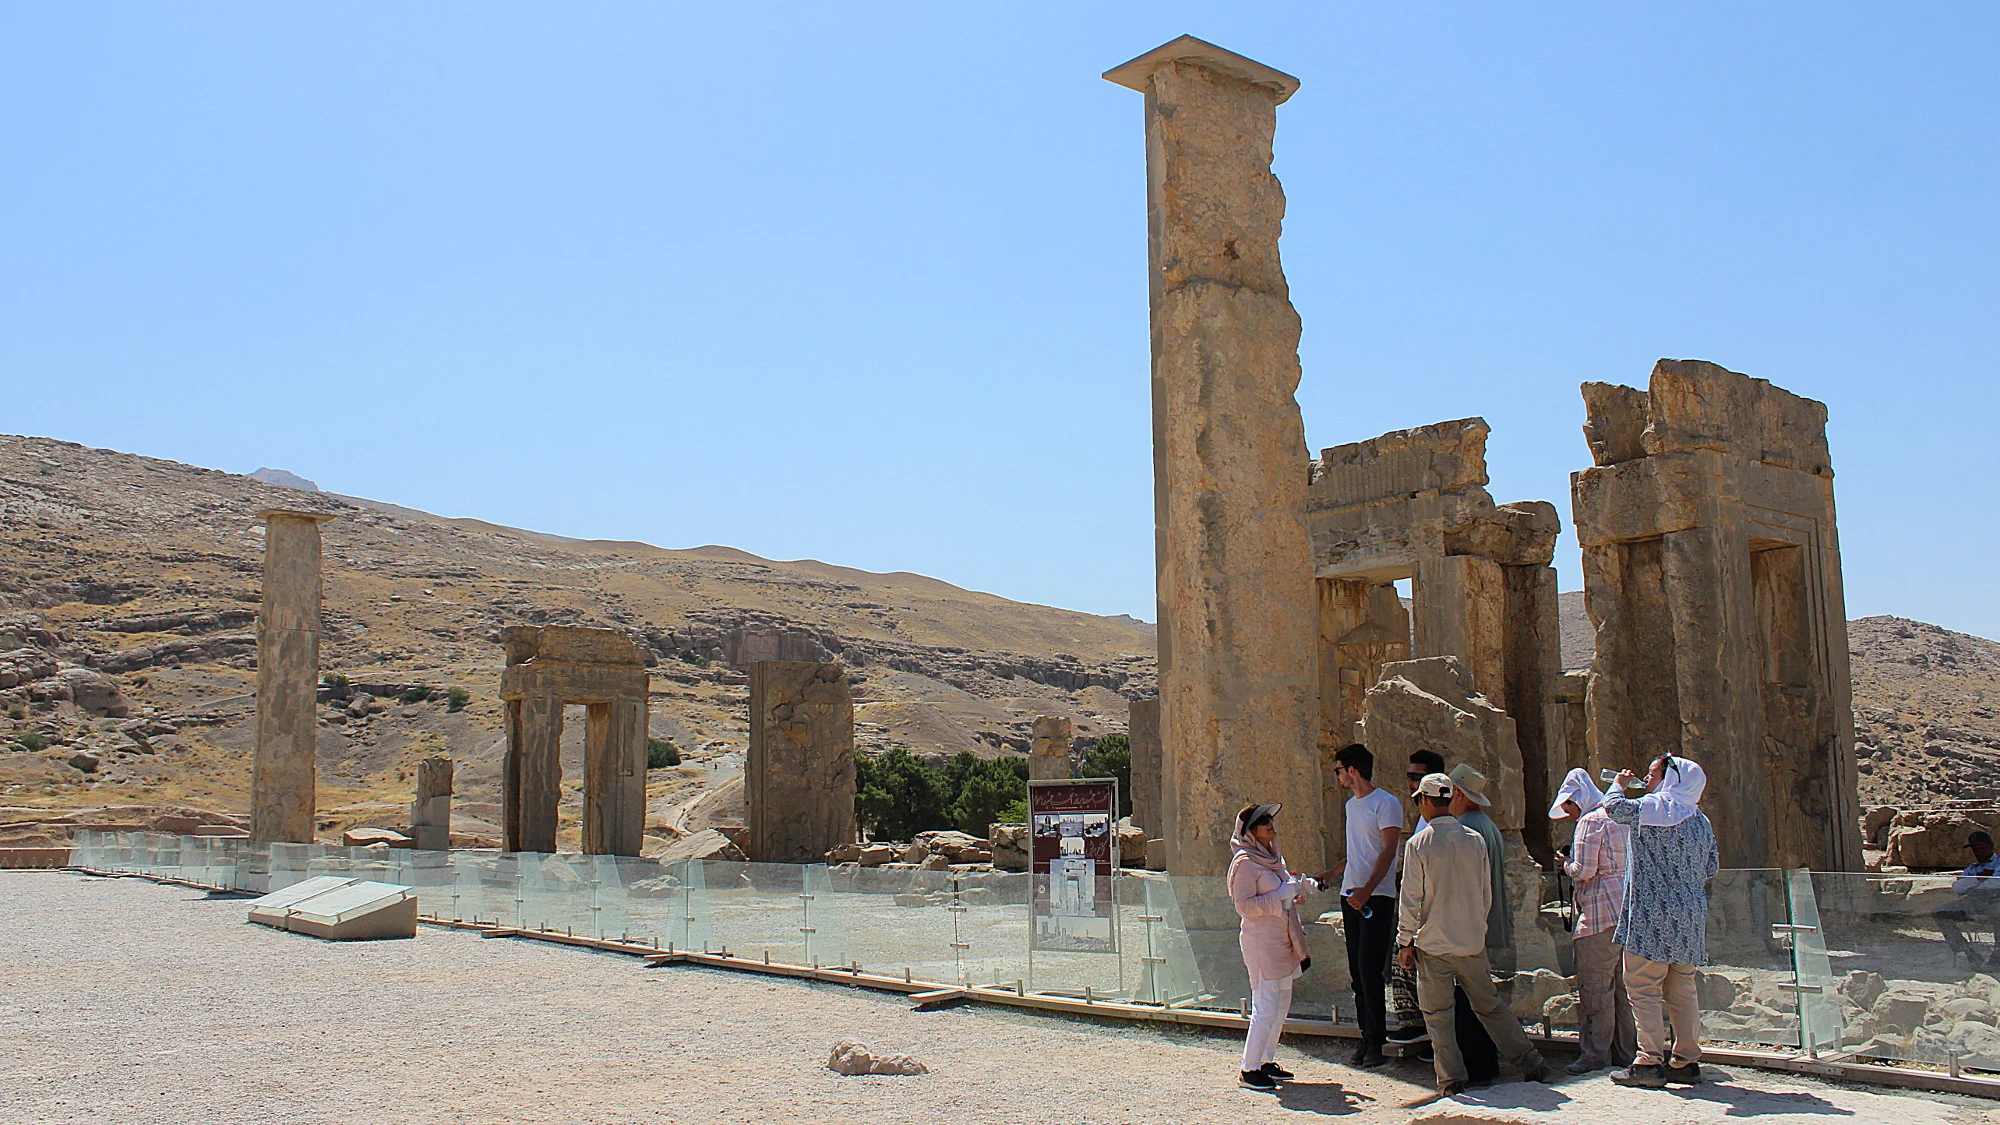 Tourist group taking shade behind a pillar at the ruins of Persepolis.